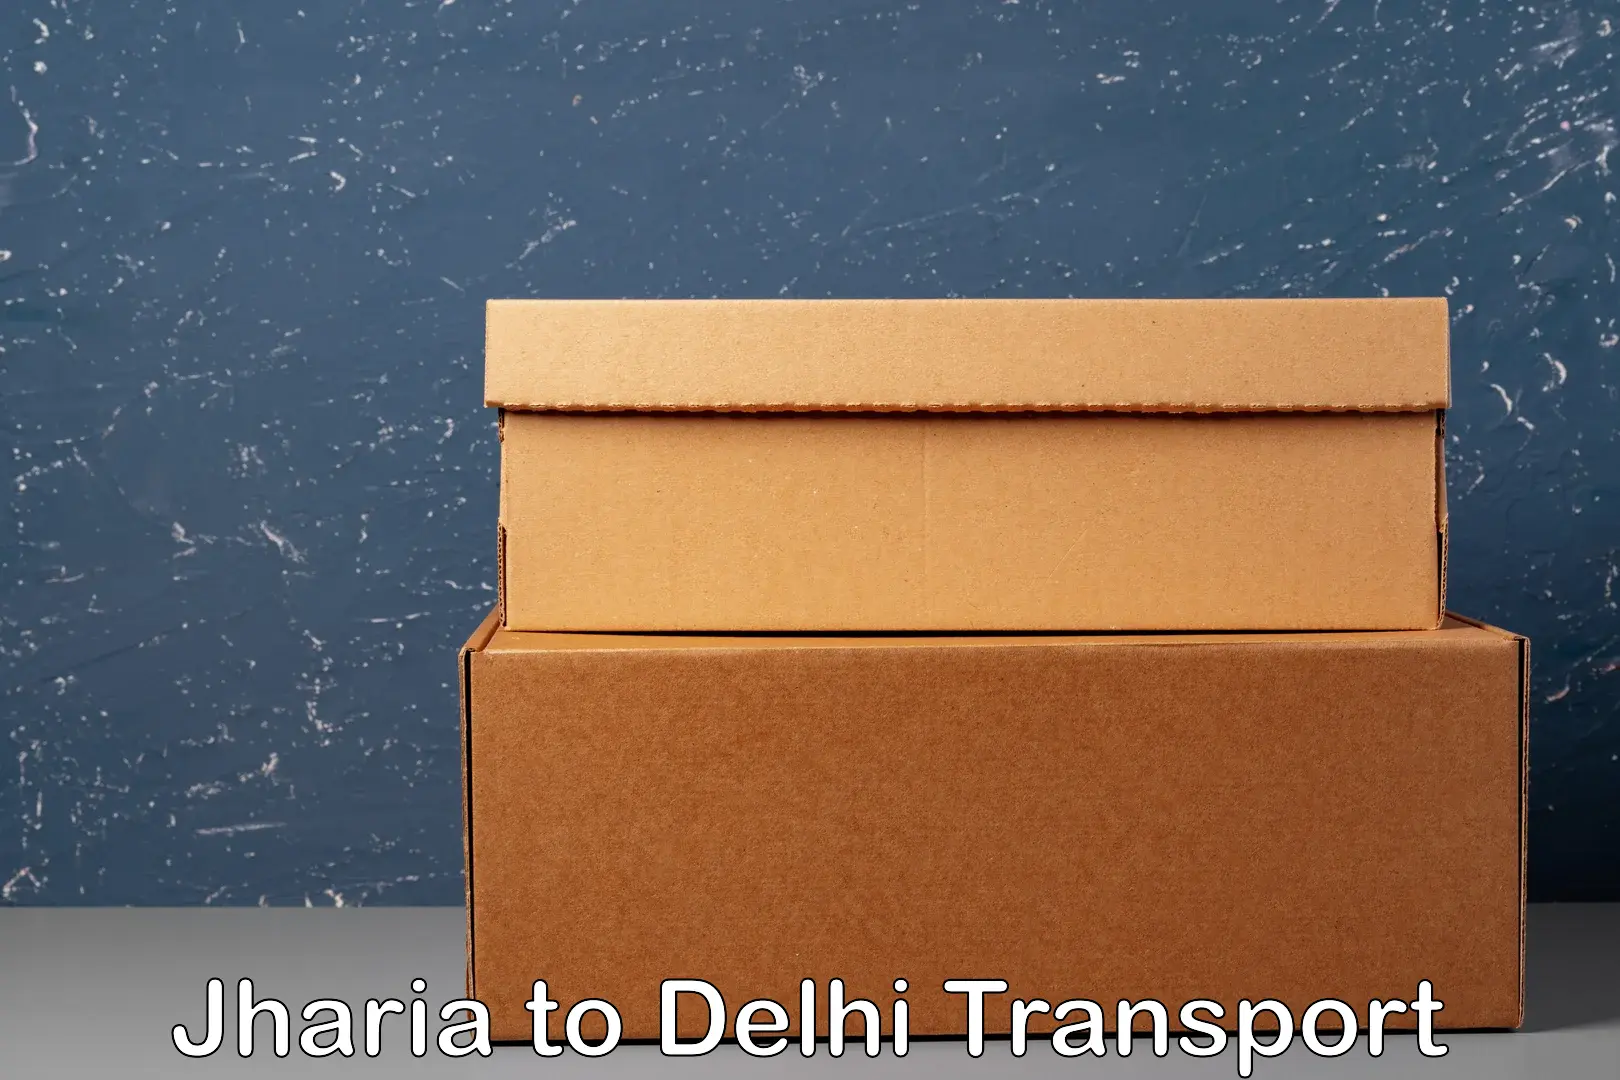 Goods delivery service Jharia to Delhi